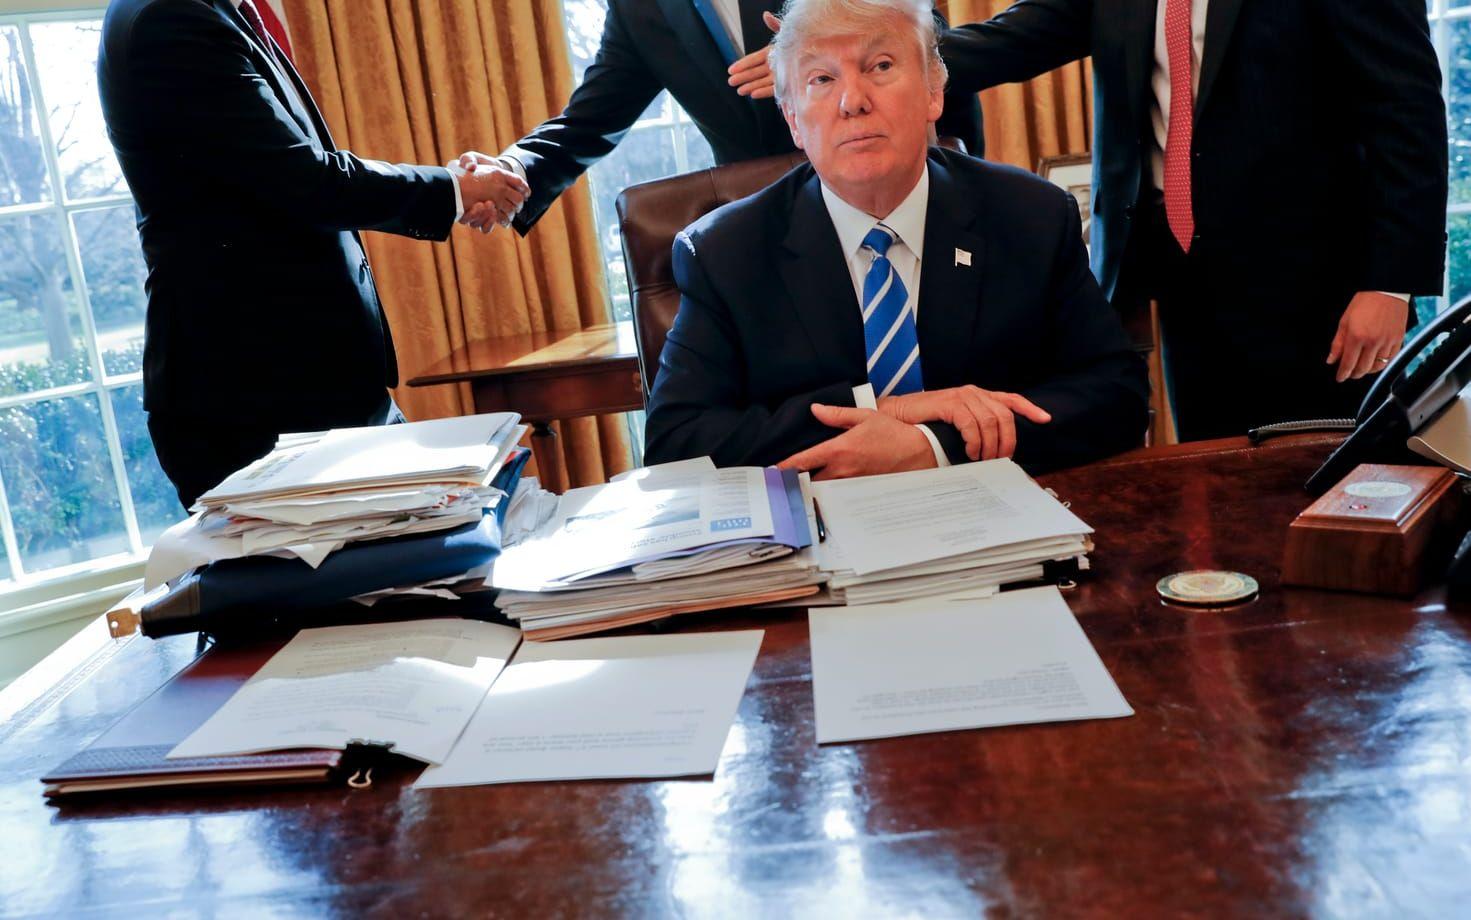 8 FEBRUARI Presidenten vid skrivbordet efter ett möte med it-företaget Intels CEO Brian Krzanich. Foto: TT